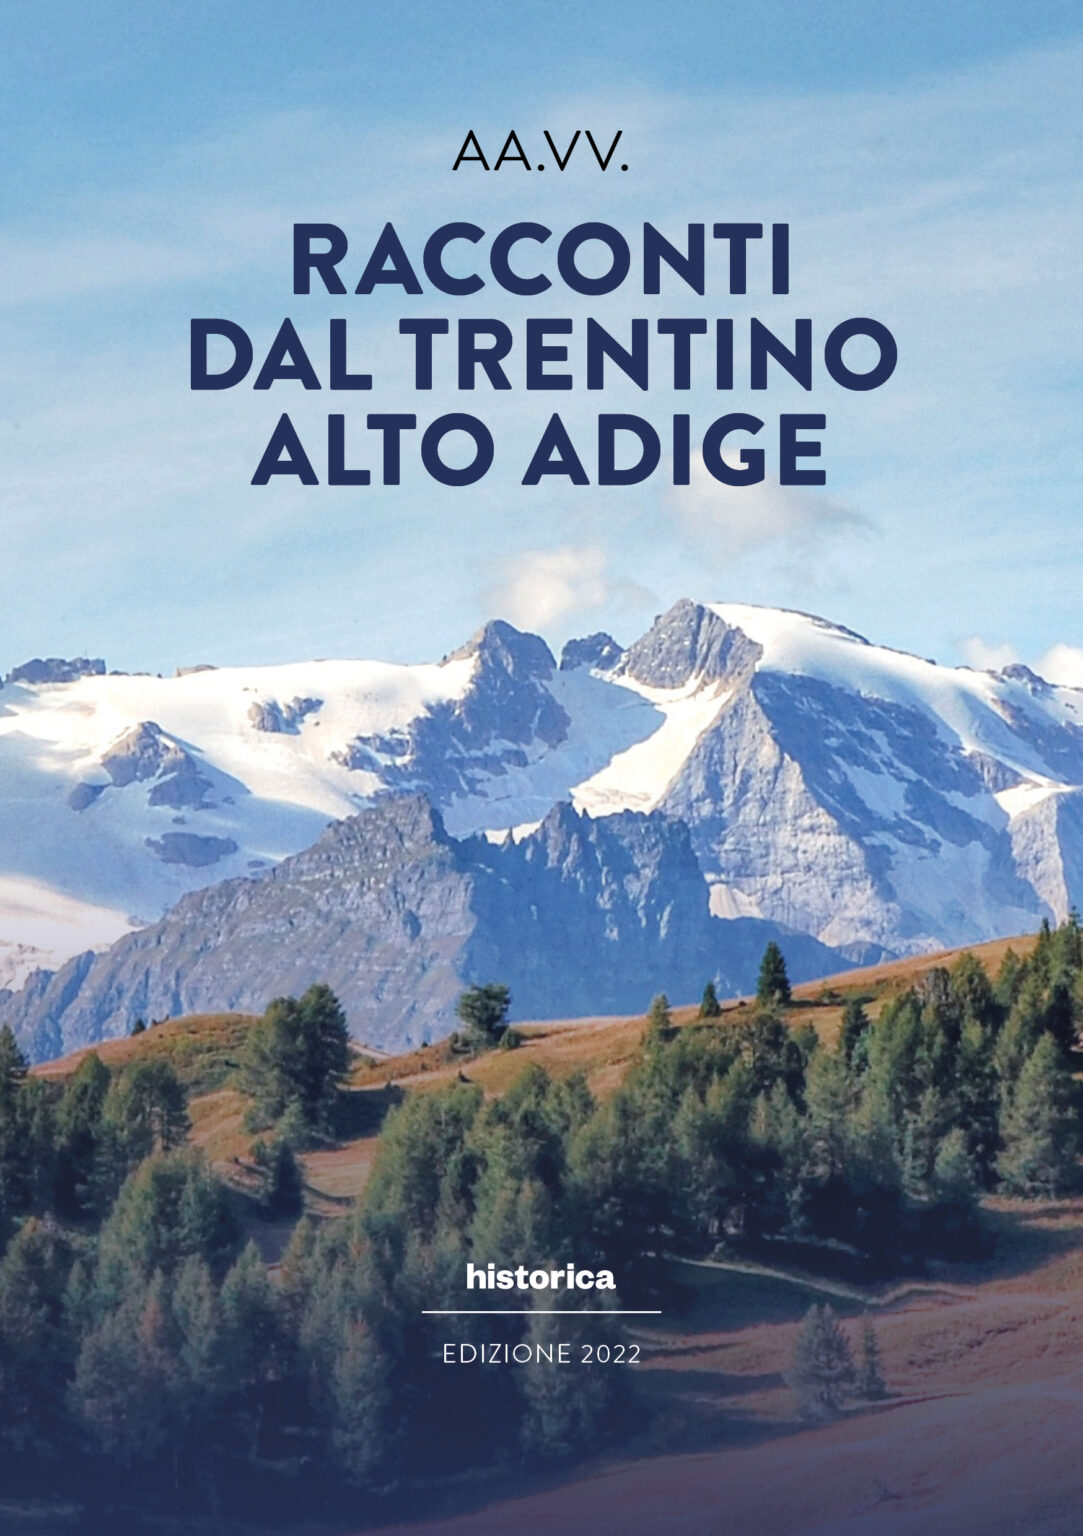 Racconti dal Trentino 2022 COVER 1083x1536